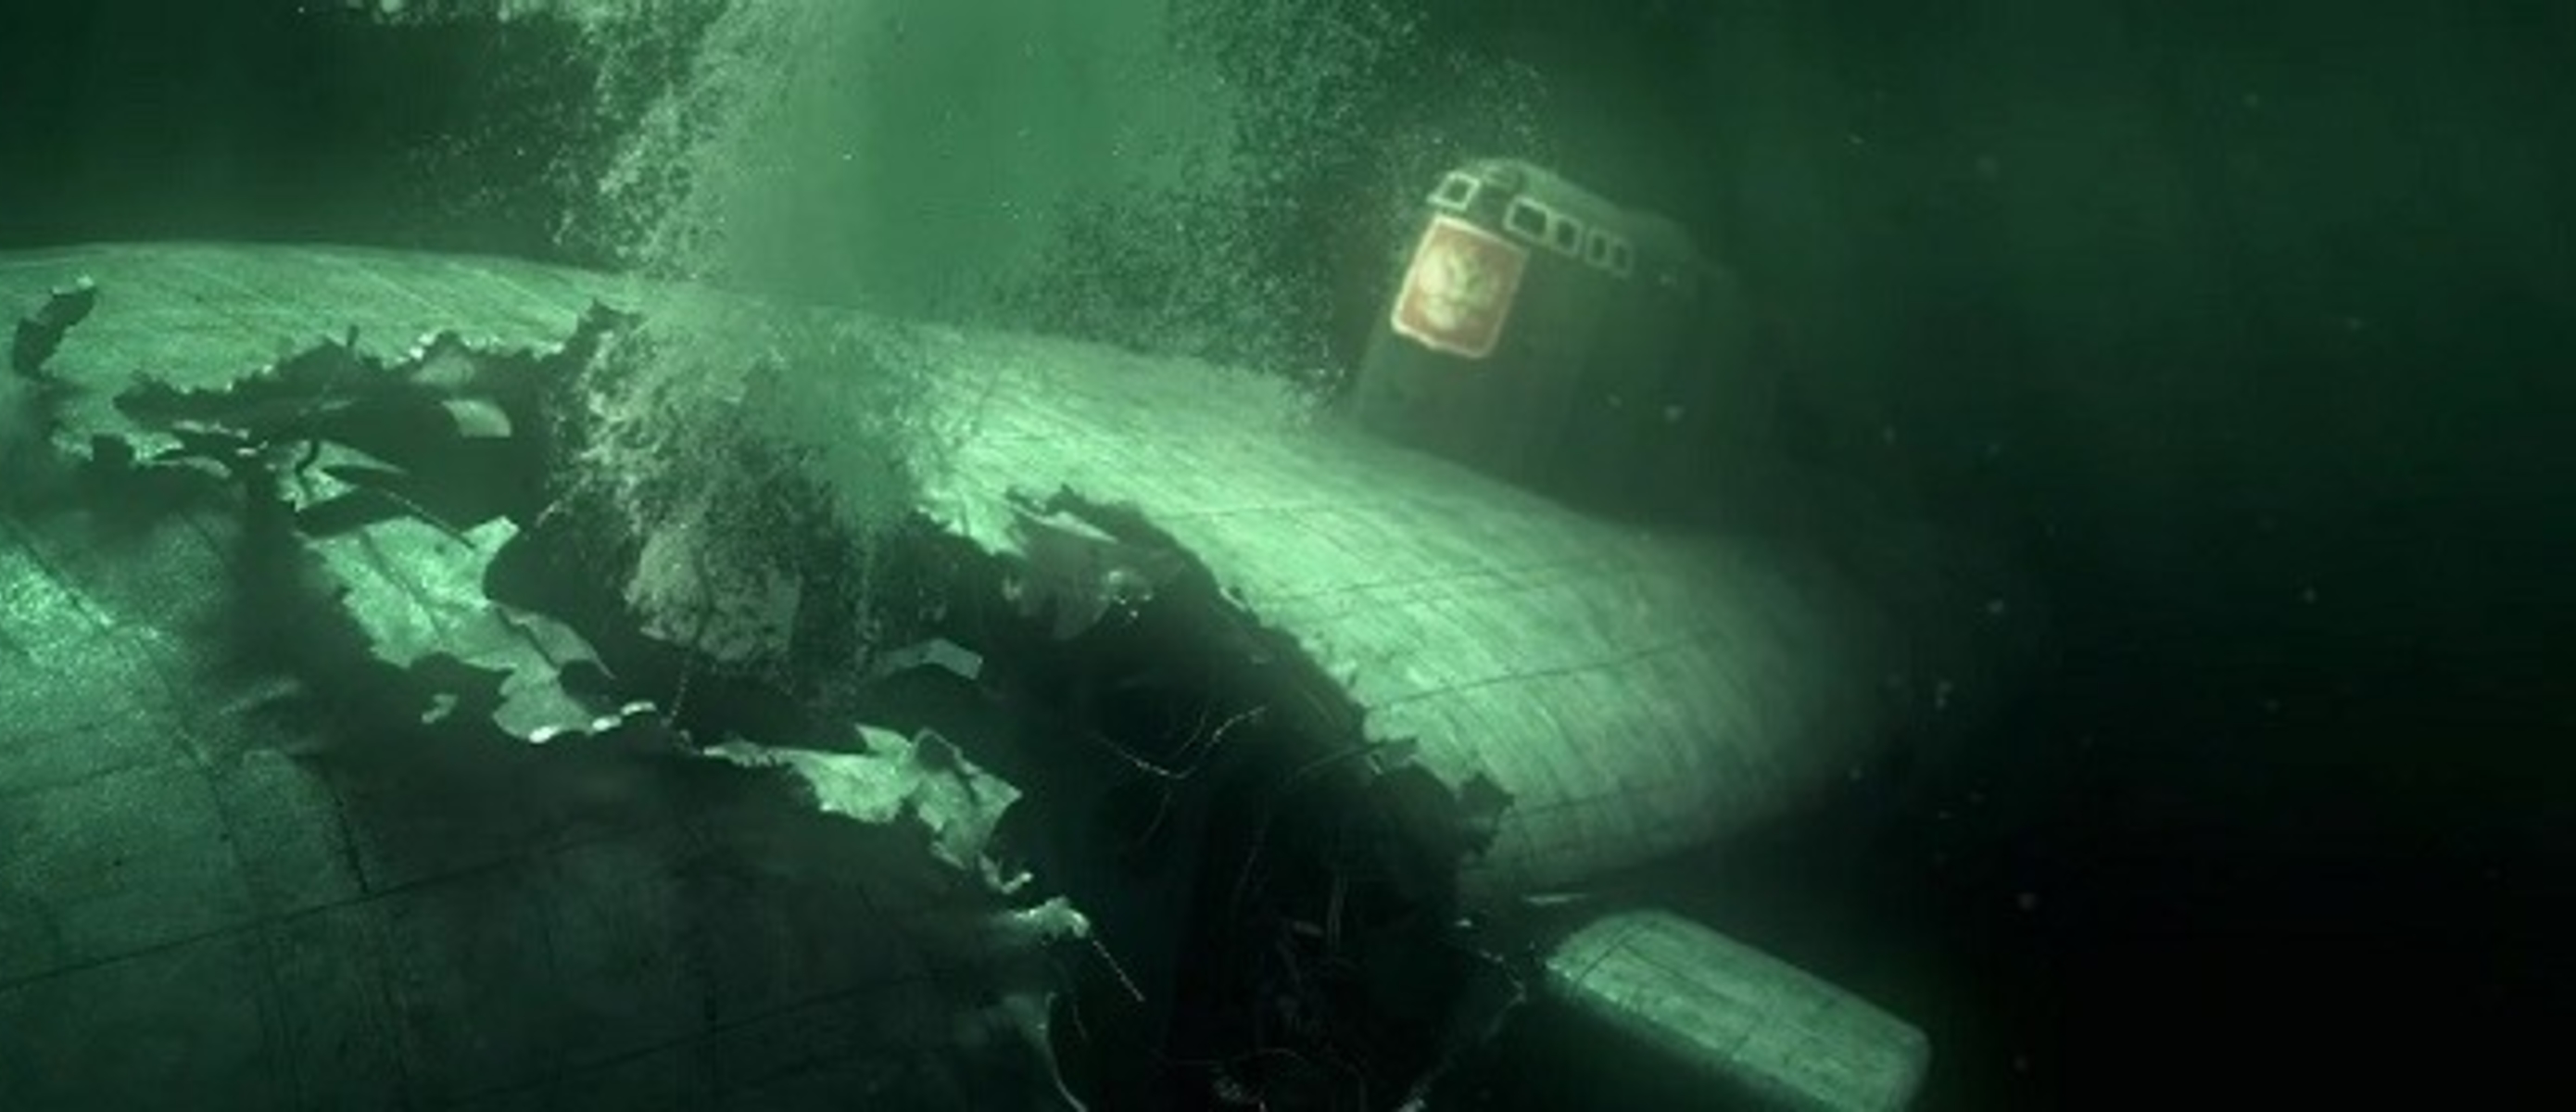 Курск ушел под воду. Подводная лодка к-141 «Курск». Курск подводная лодка катастрофа. Курск 141 атомная подводная лодка. К-141 «Курск».